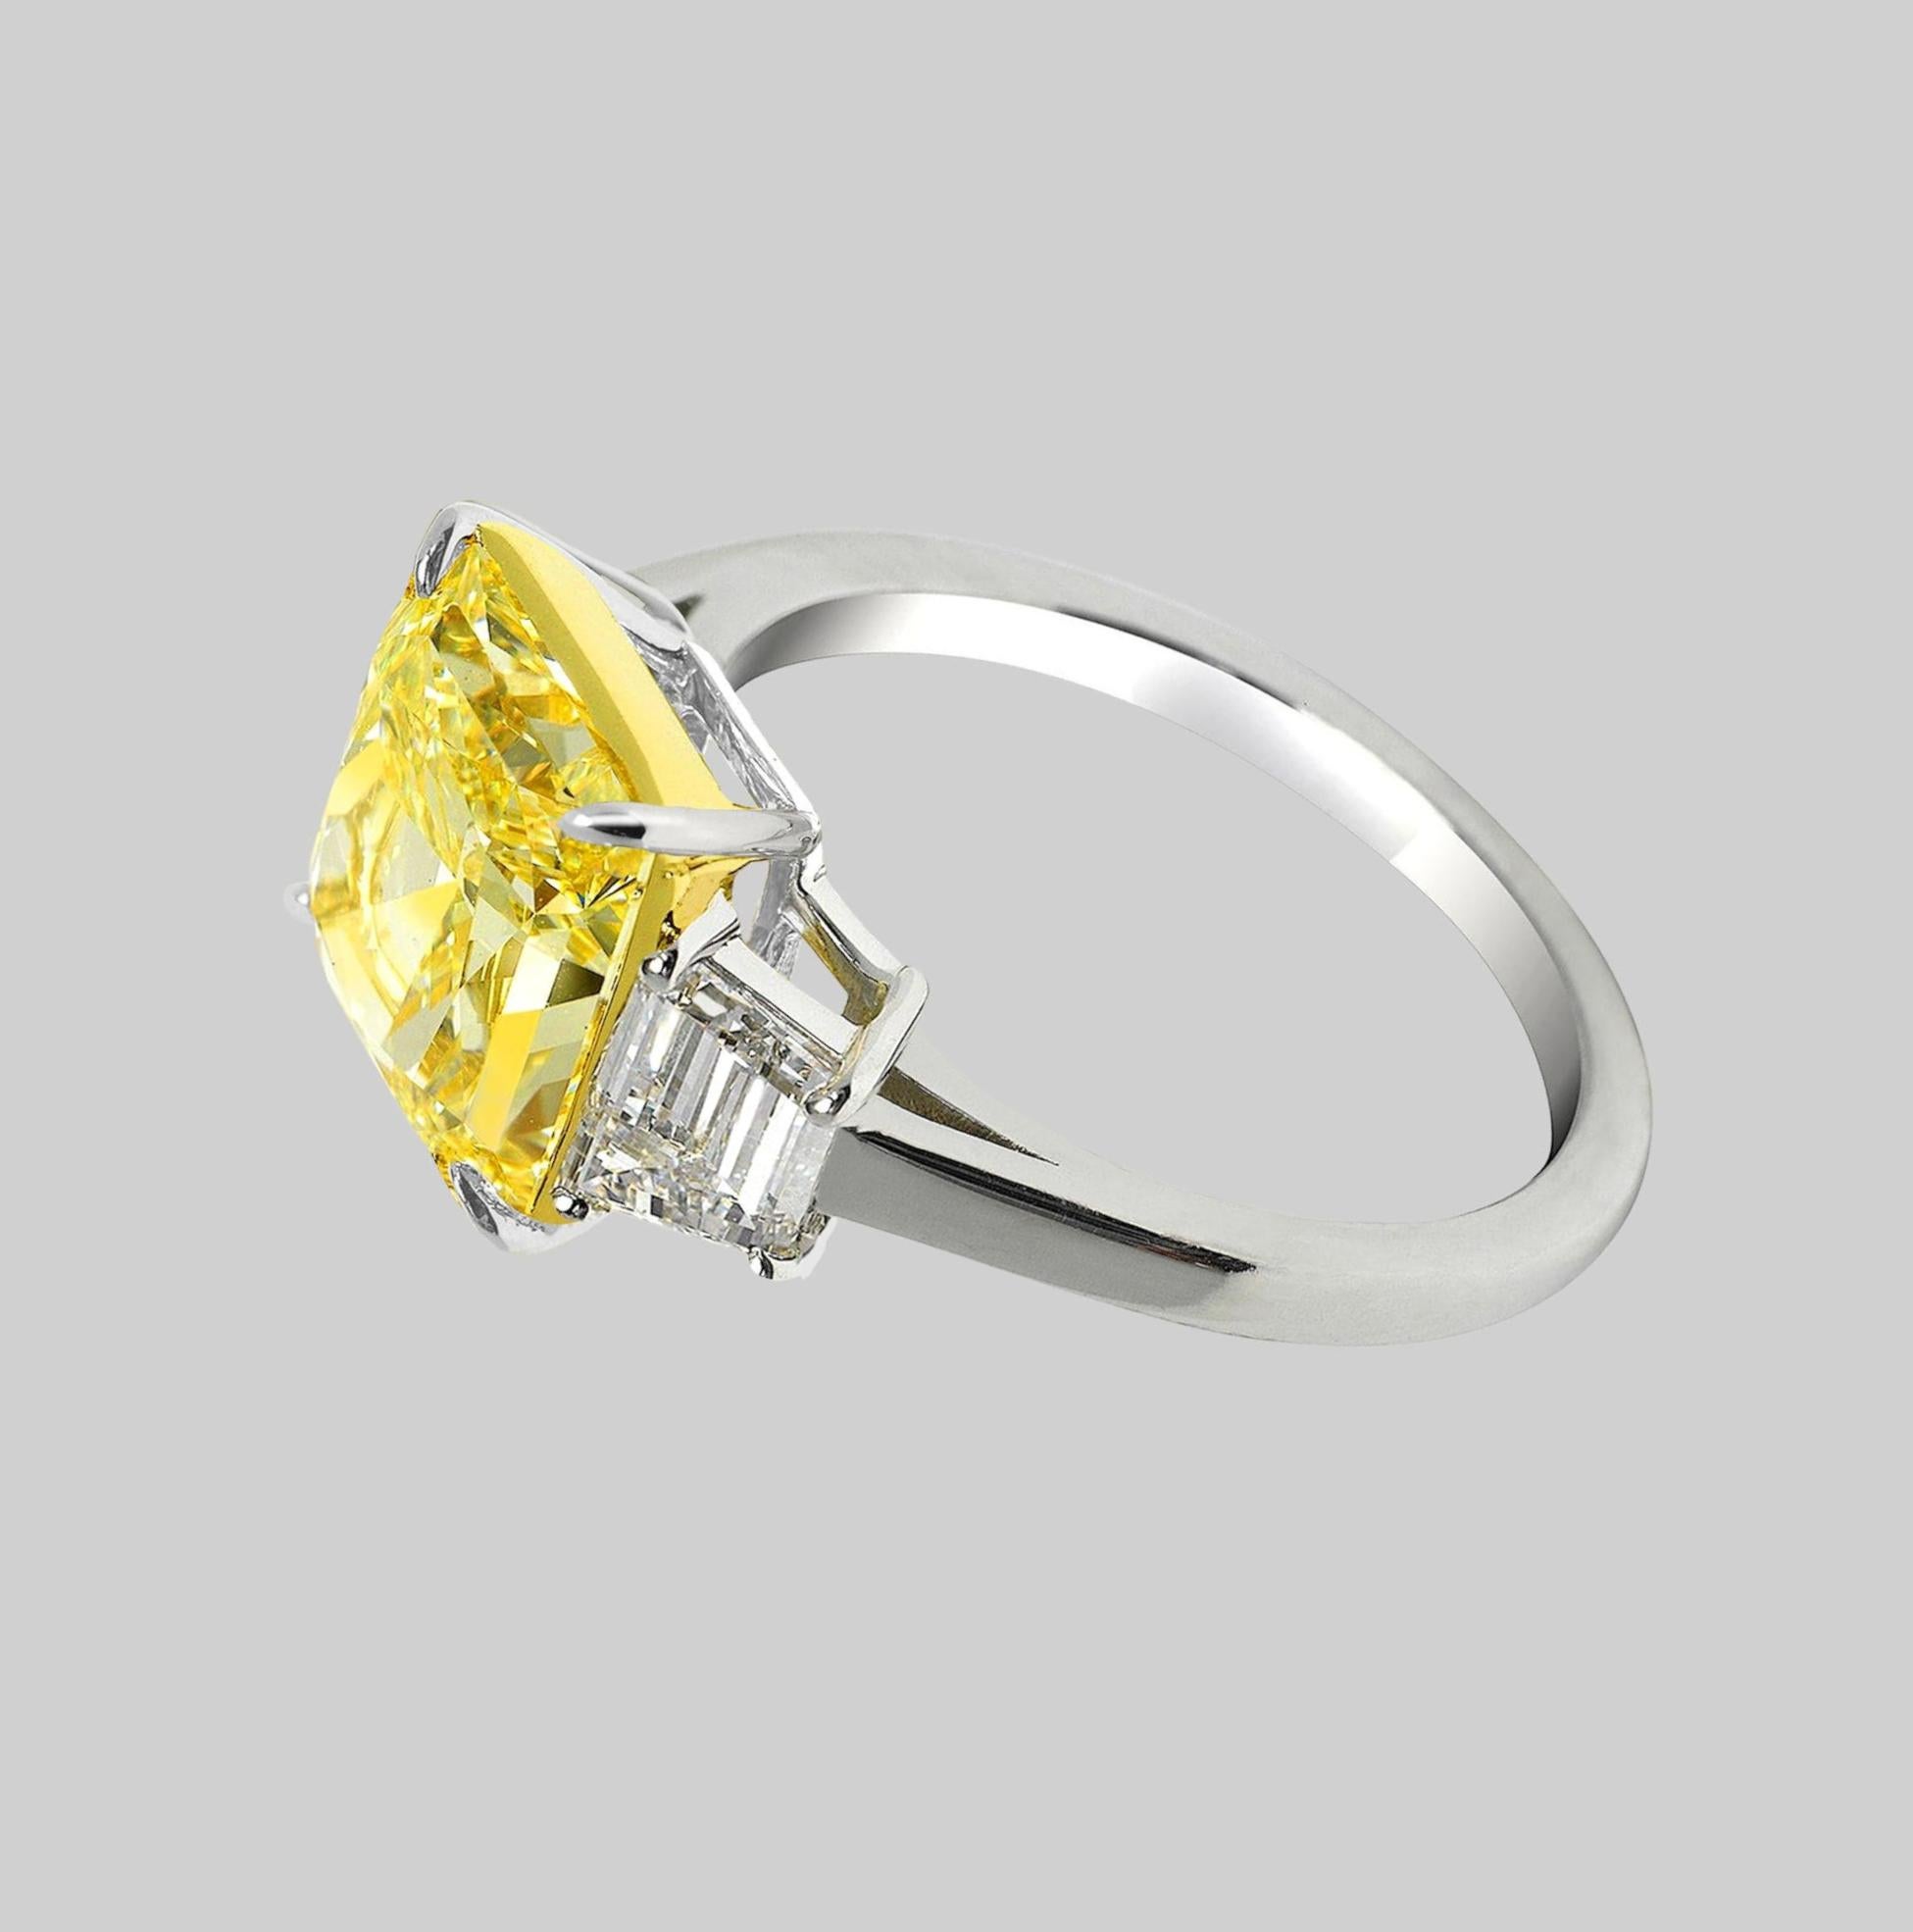 Découvrez la beauté exquise de cette bague à diamant radiant de 7 carats de couleur jaune intense fantaisie, certifiée par le GIA. La couleur jaune intense du diamant, associée à sa pureté sans faille (IF), crée une allure captivante et